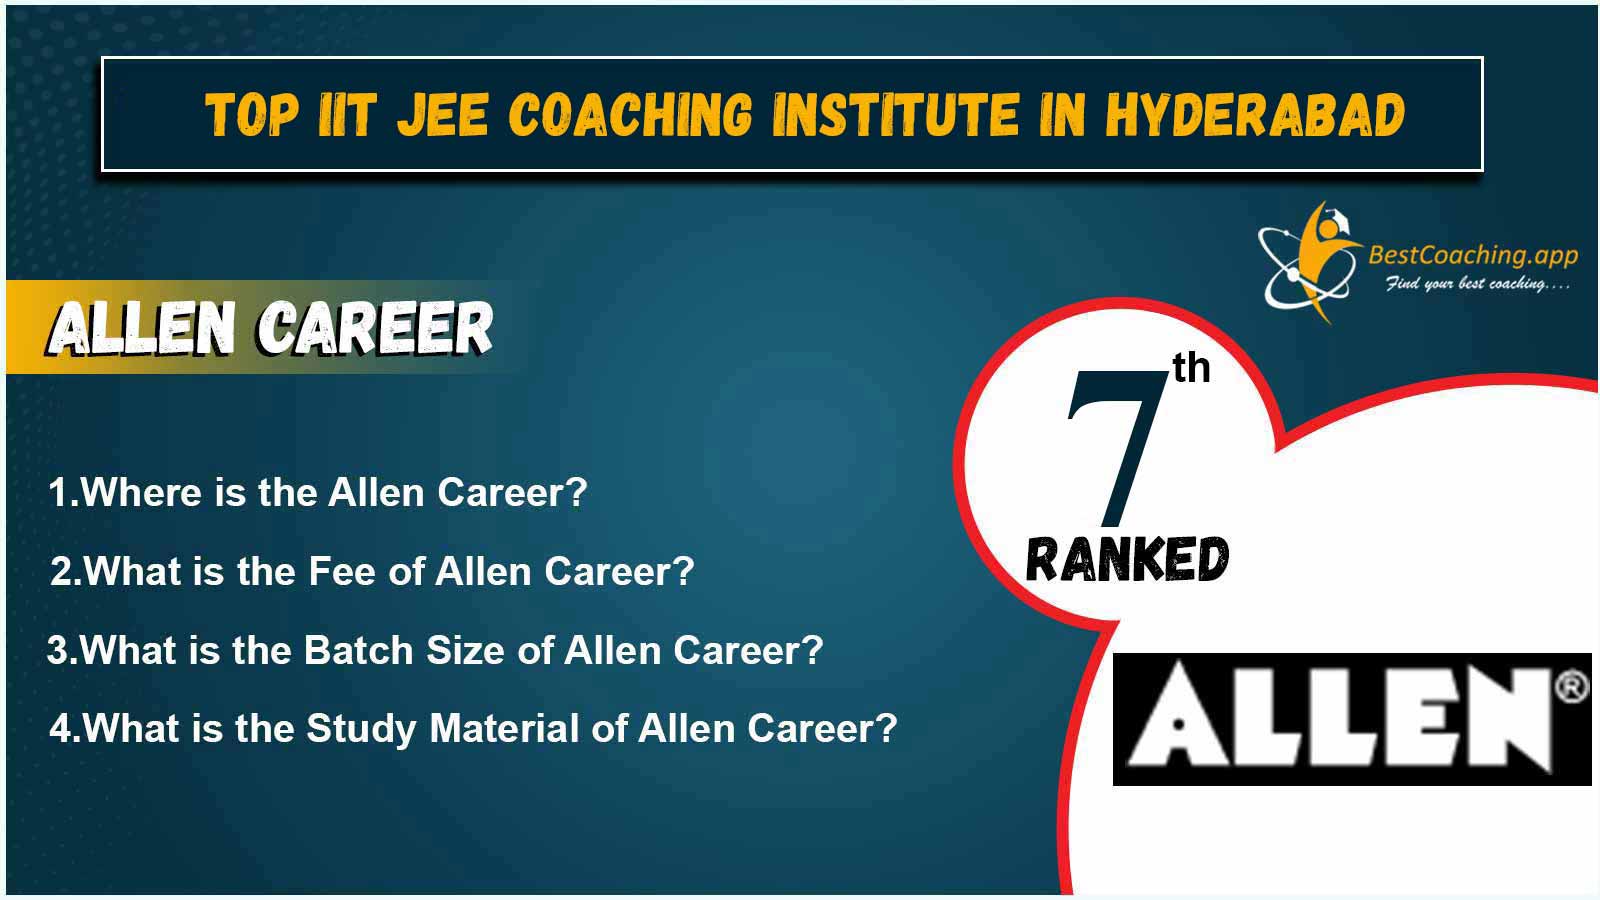 Top IIT JEE Coaching Institute In Hyderabad